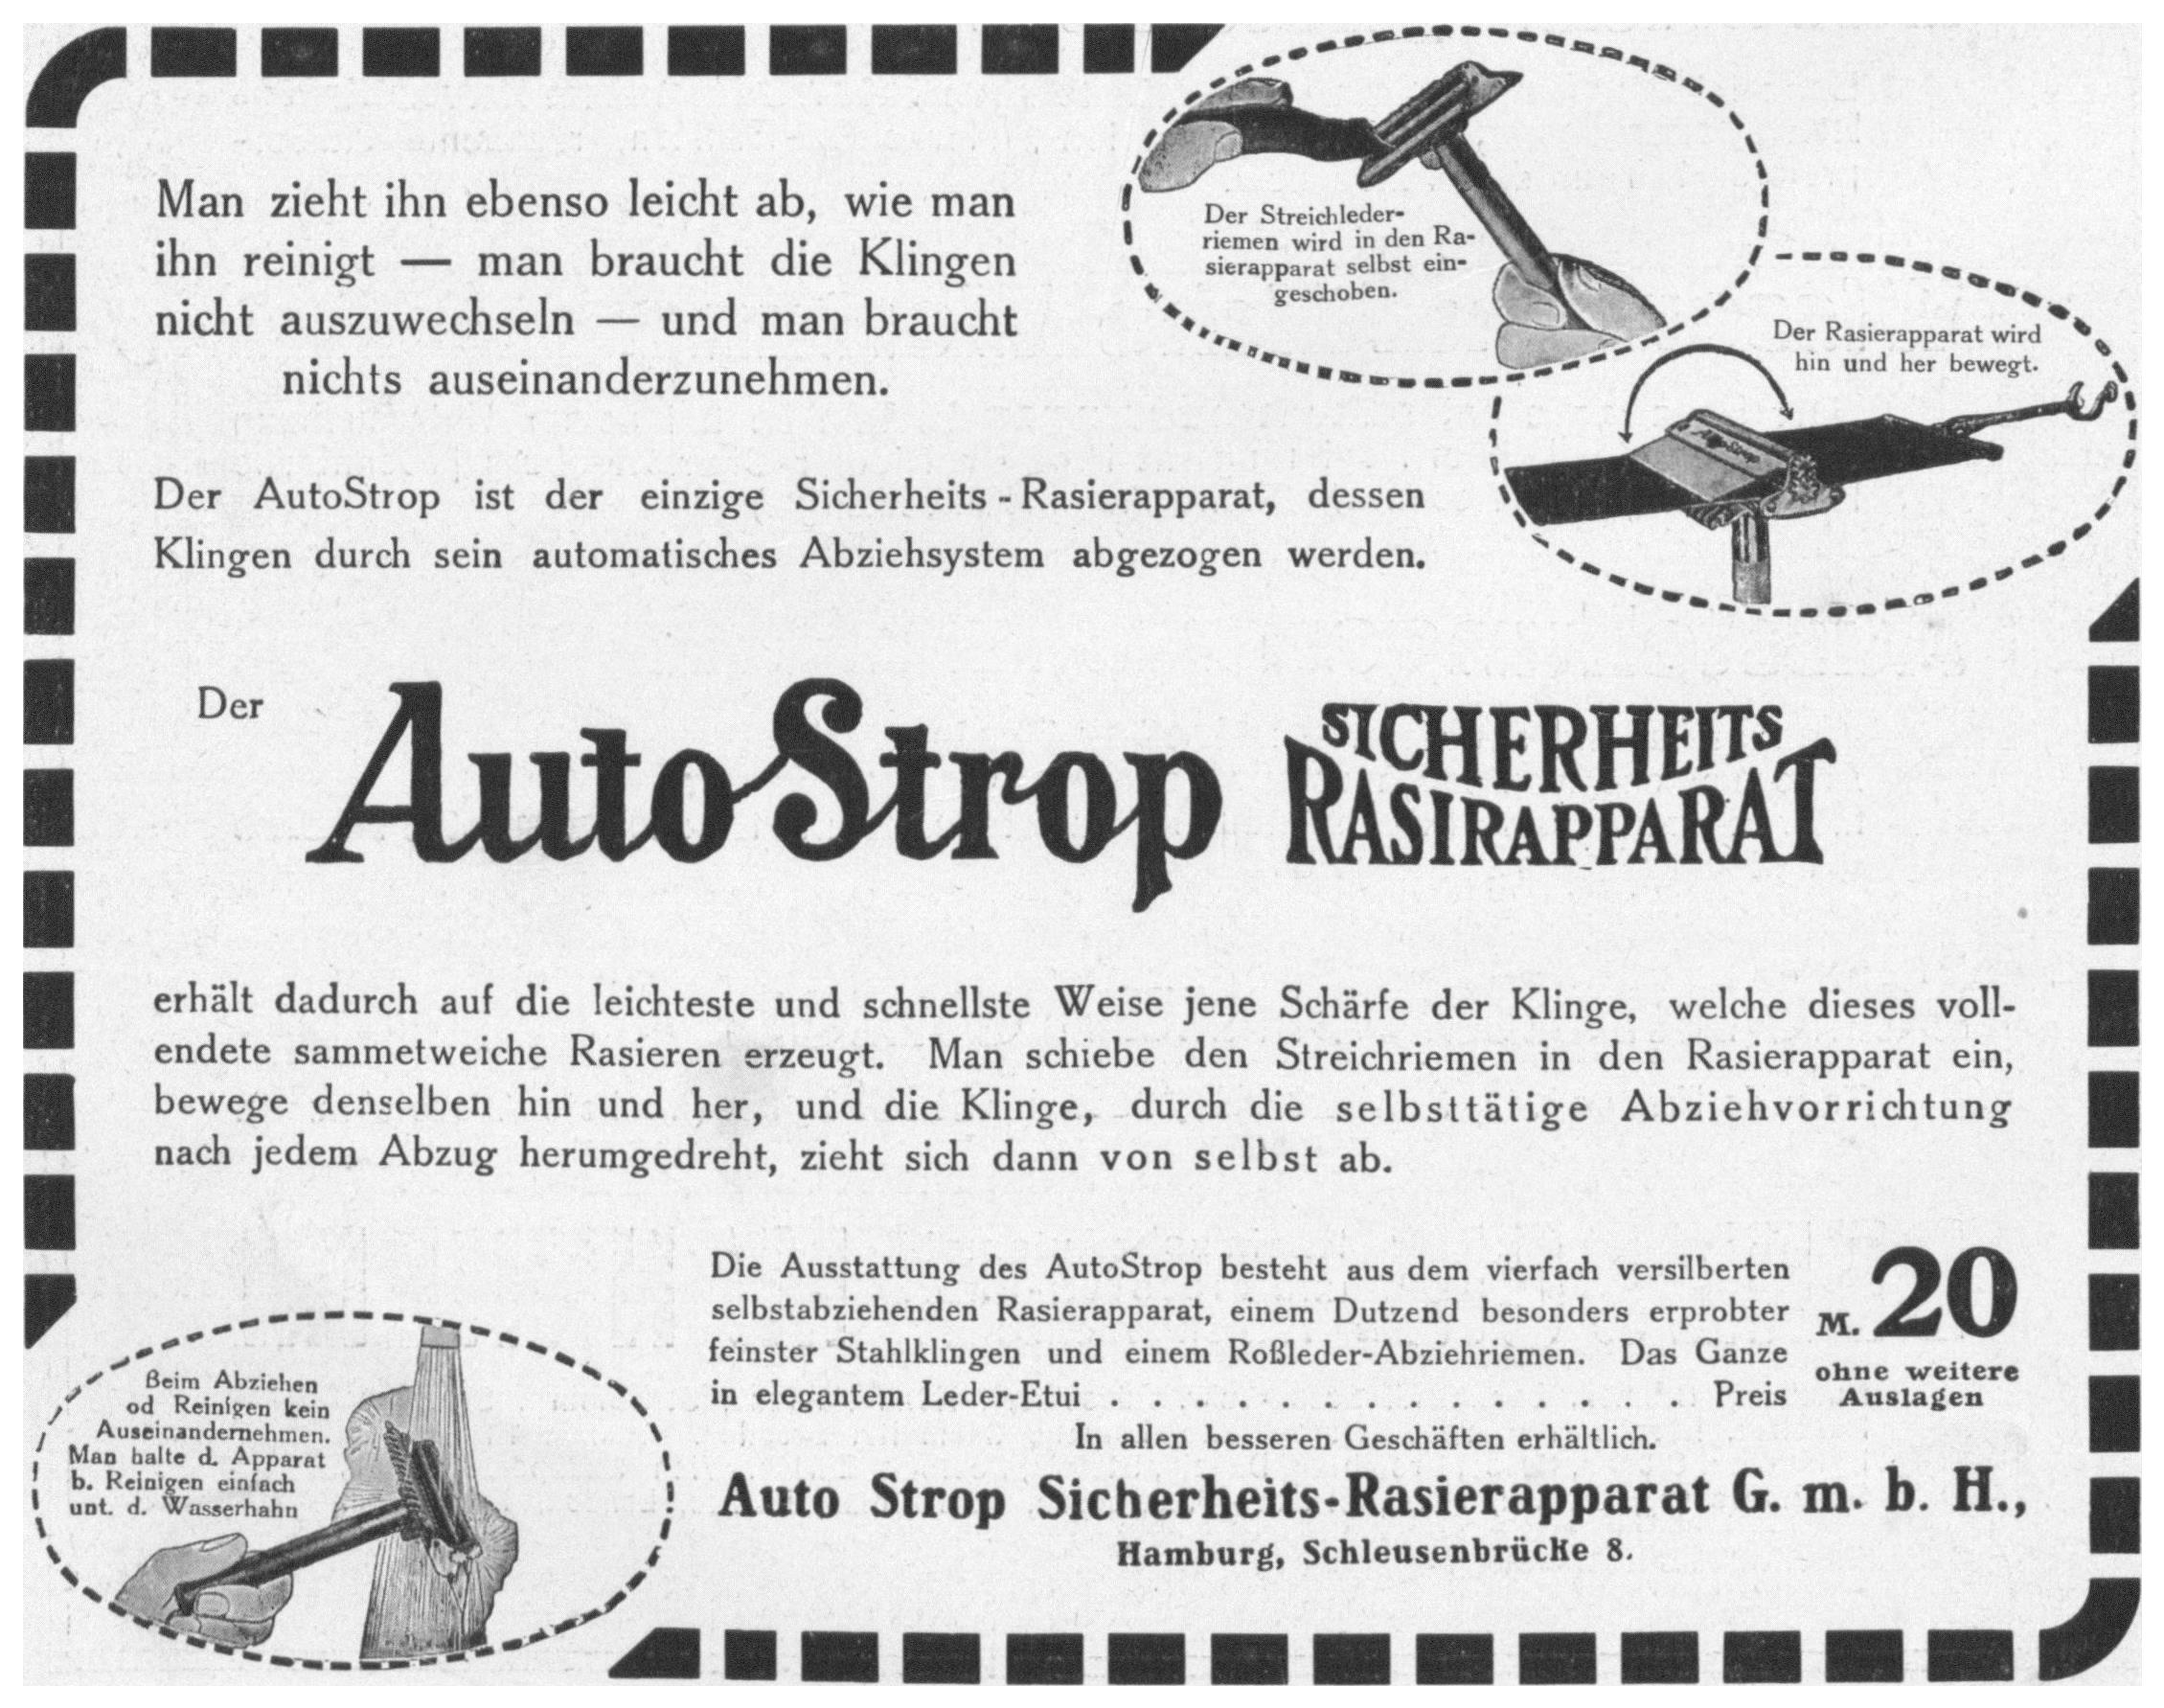 Auto Strop 1912 1.jpg